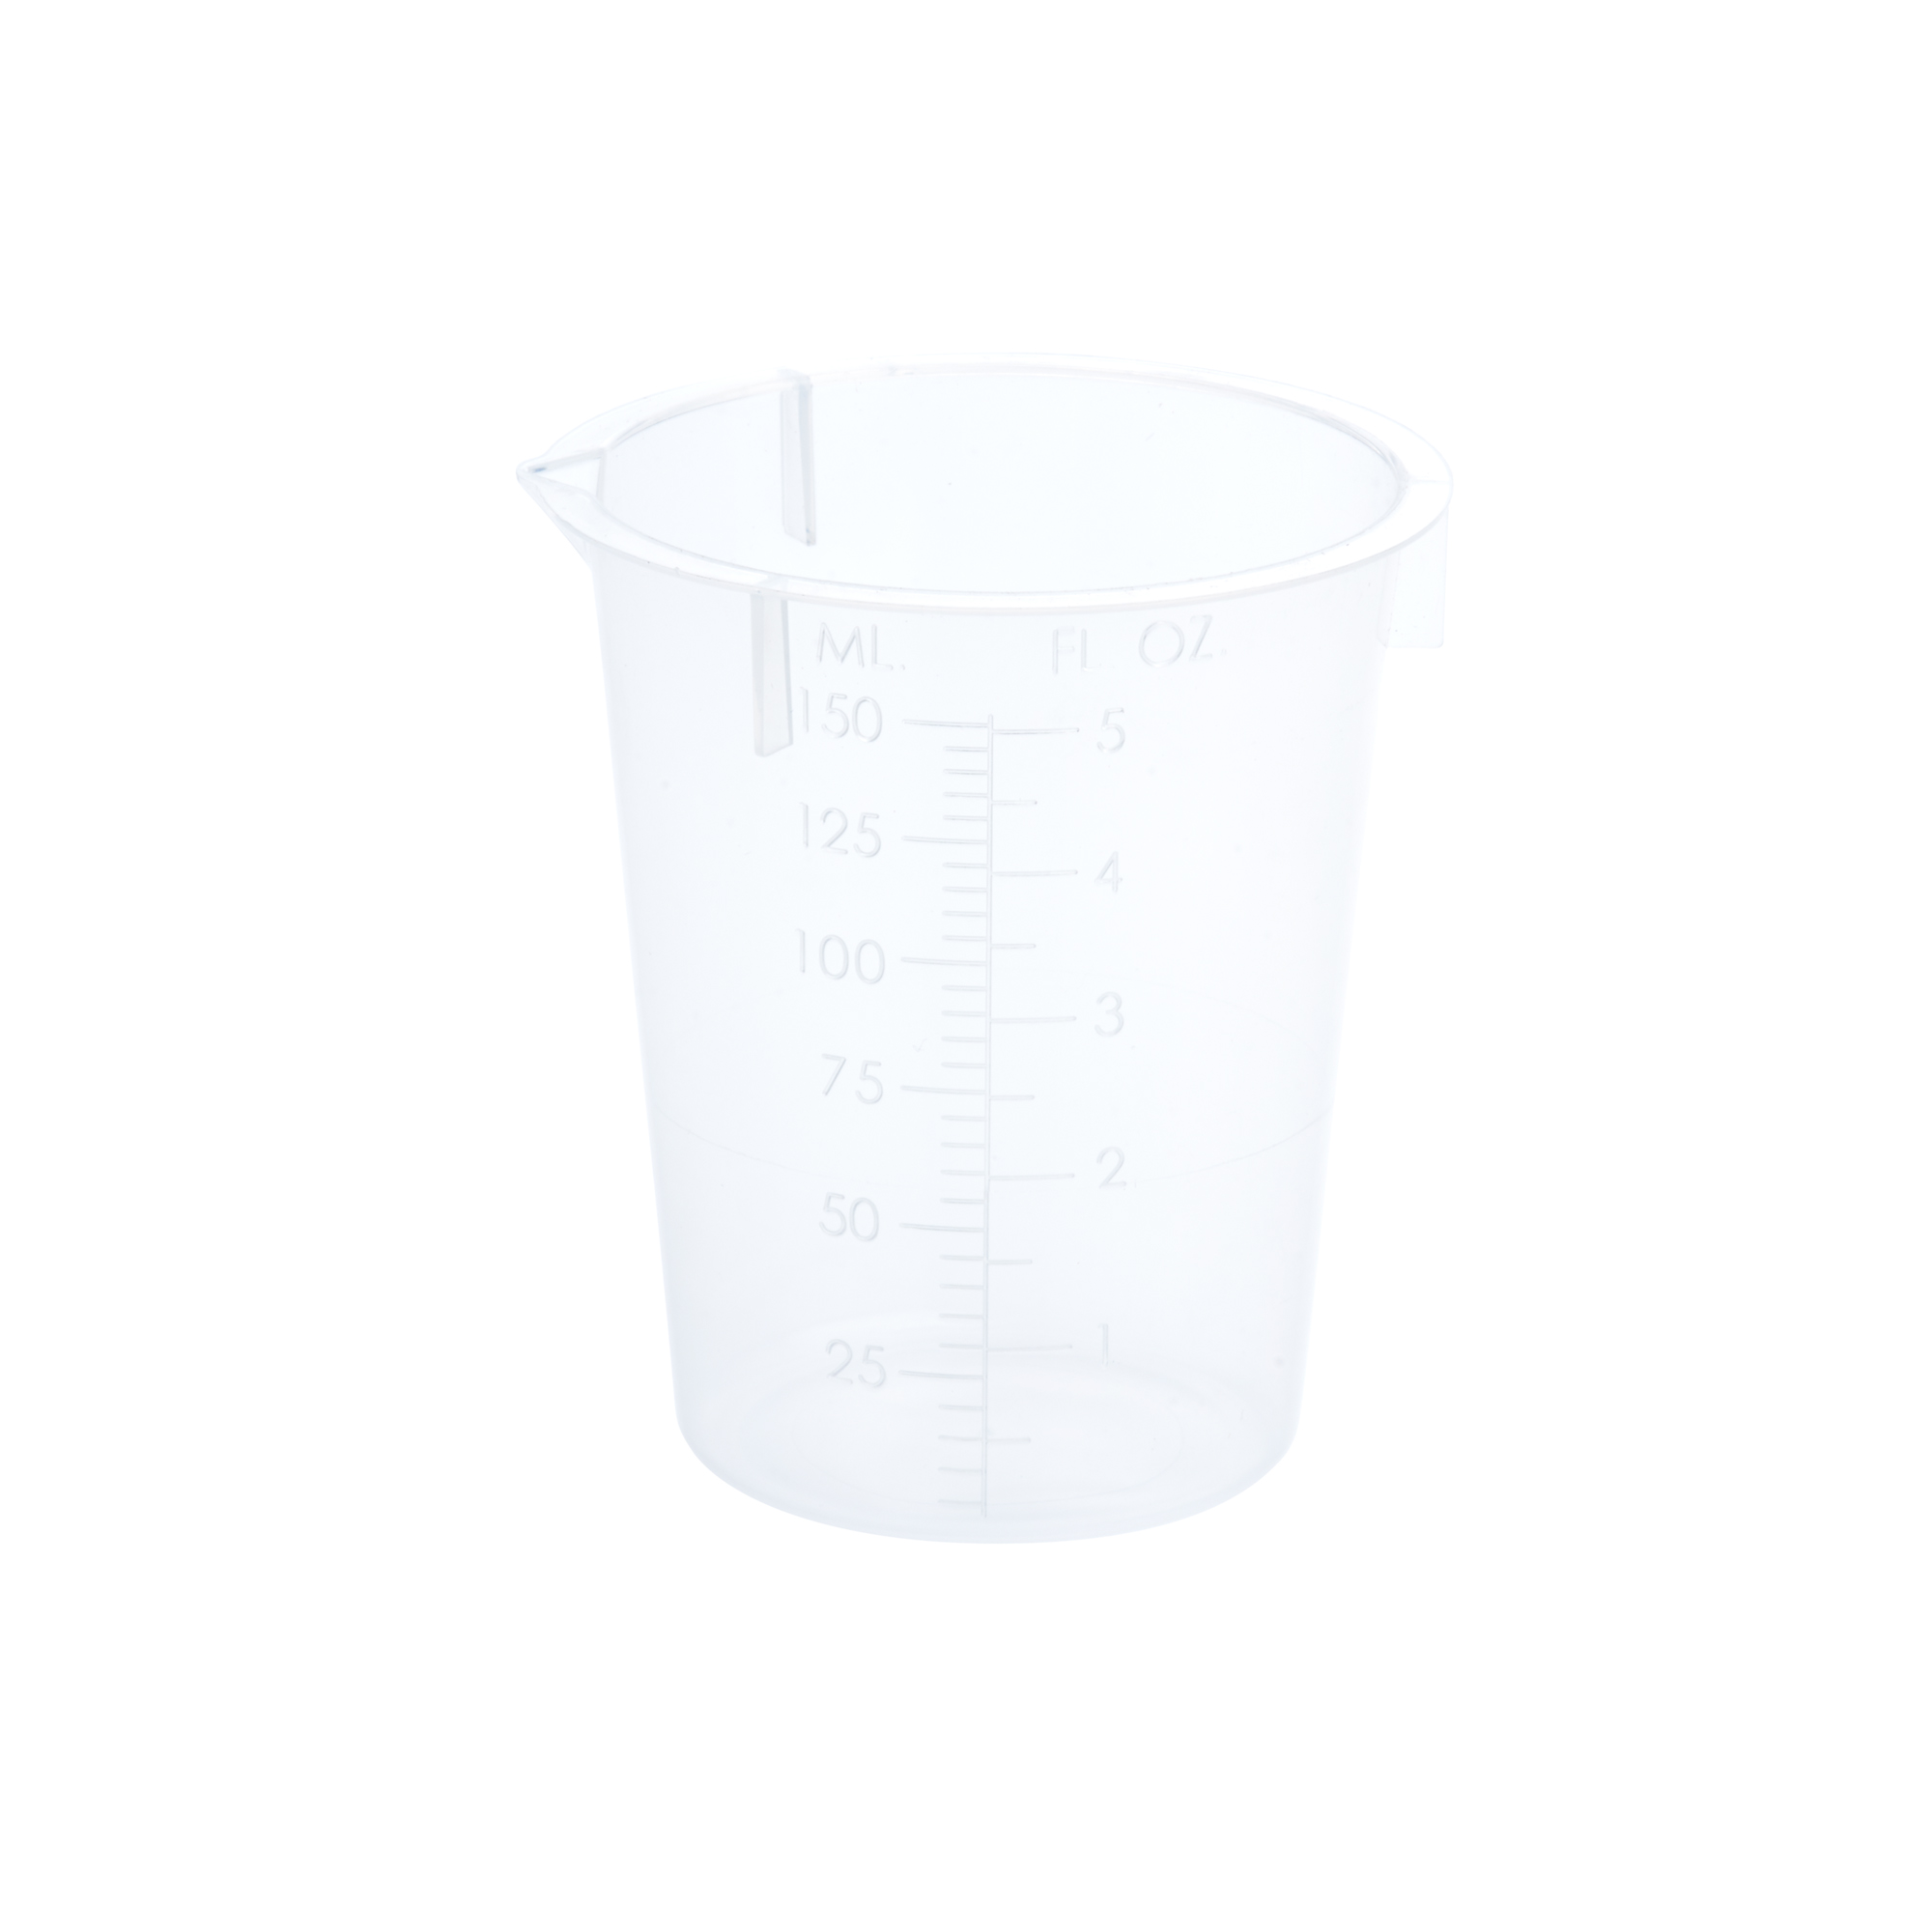 promo small 30ml plastic measuring cups